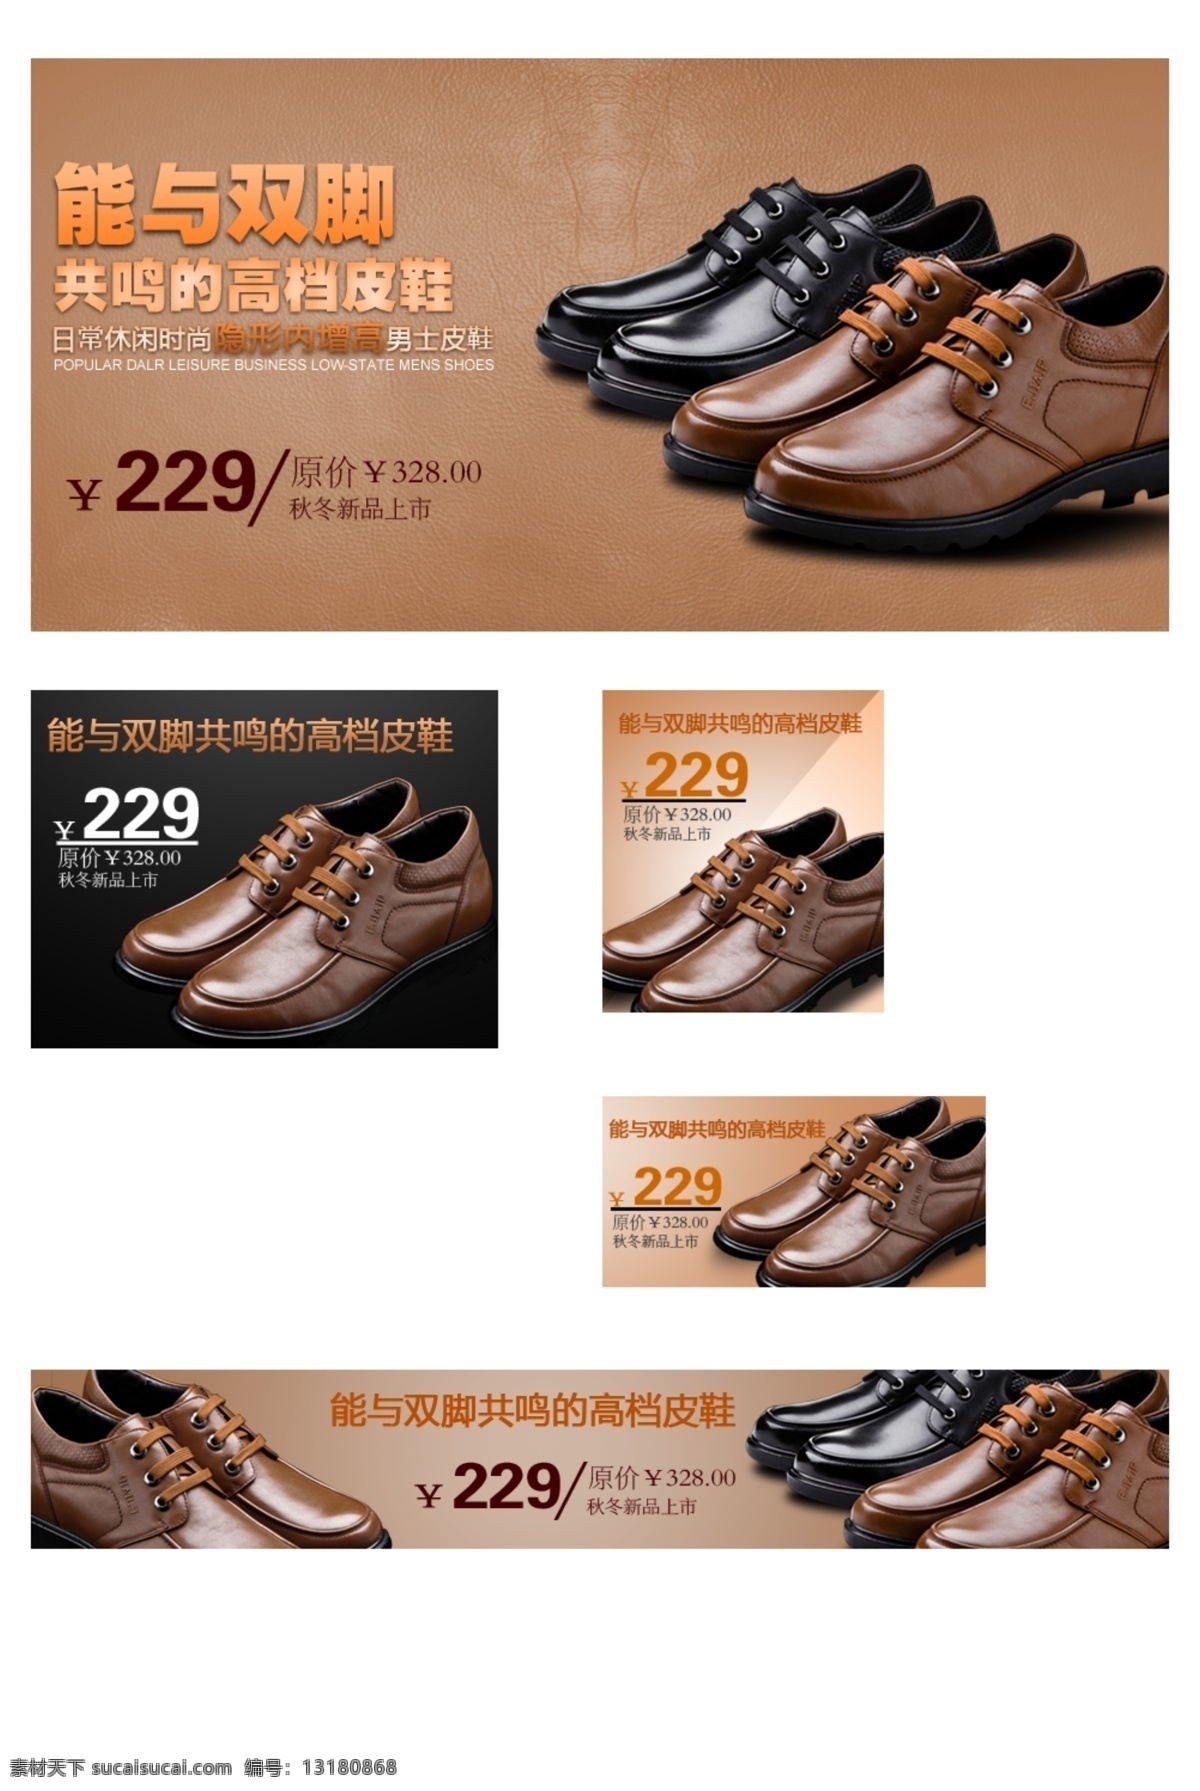 能与双脚 高档皮鞋 皮鞋宣传 鞋子 质感背景 中文模版 网页模板 源文件